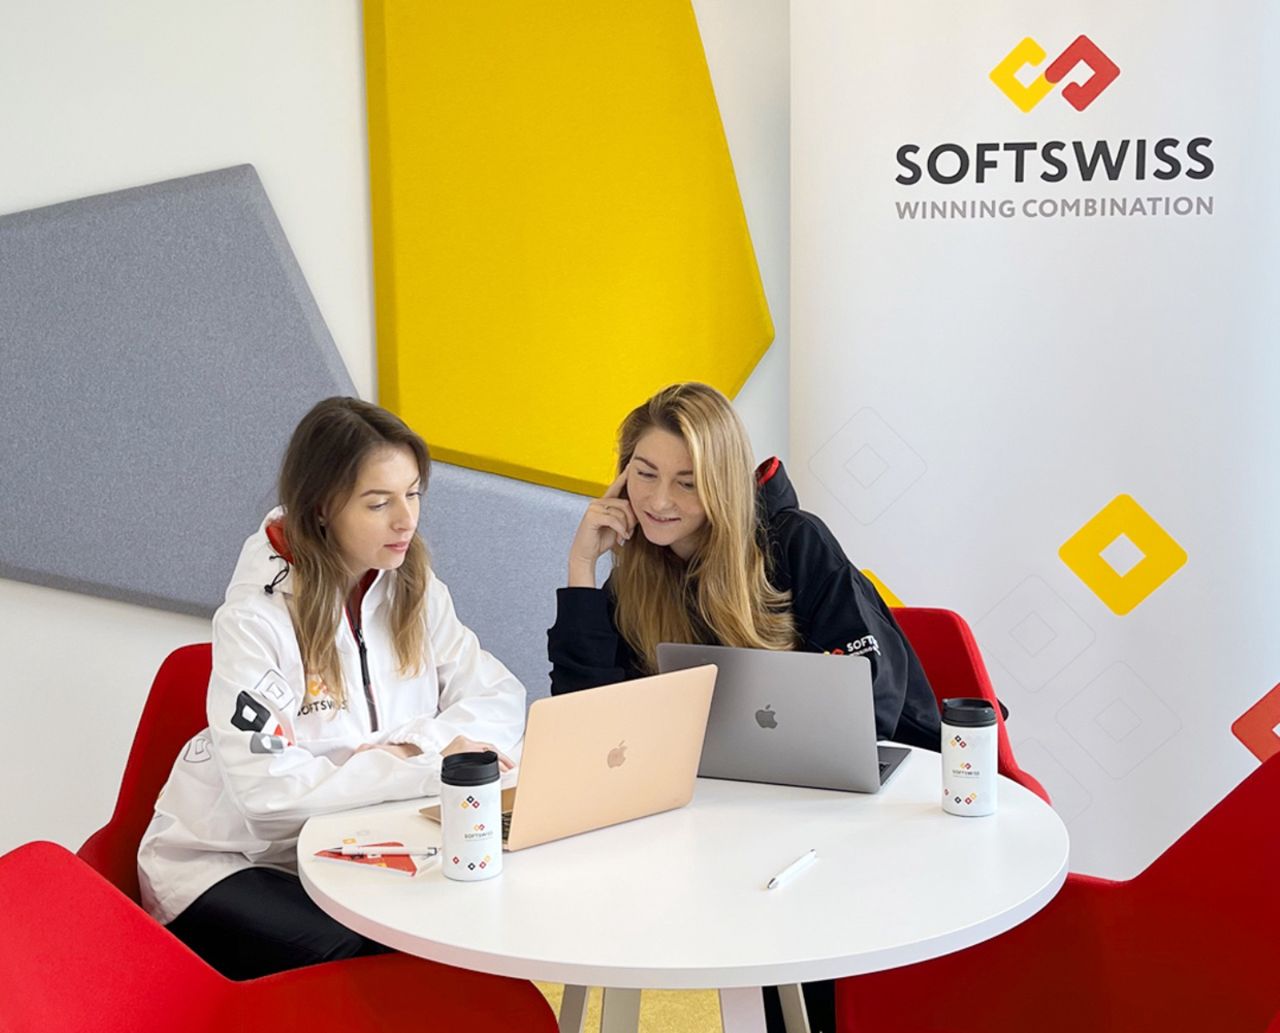 Firma SOFTSWISS otwiera w Polsce drugie centrum programistyczne - tym razem podbija Warszawę